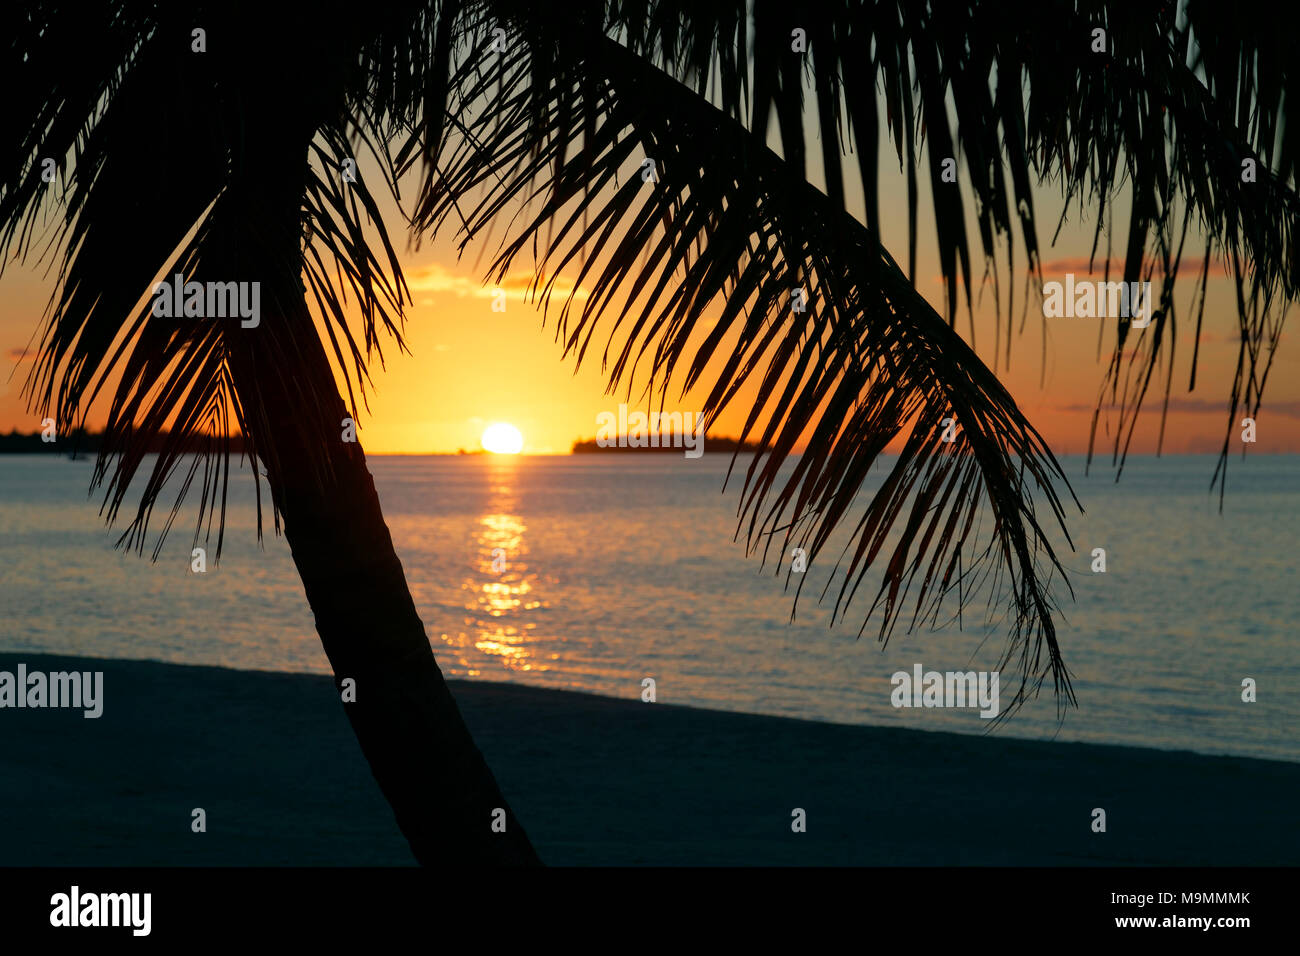 Palmier sur la plage au coucher du soleil, l'atoll de Tikehau, archipel des Tuamotu, îles de la société, Iles du Vent, Polynésie Française Banque D'Images